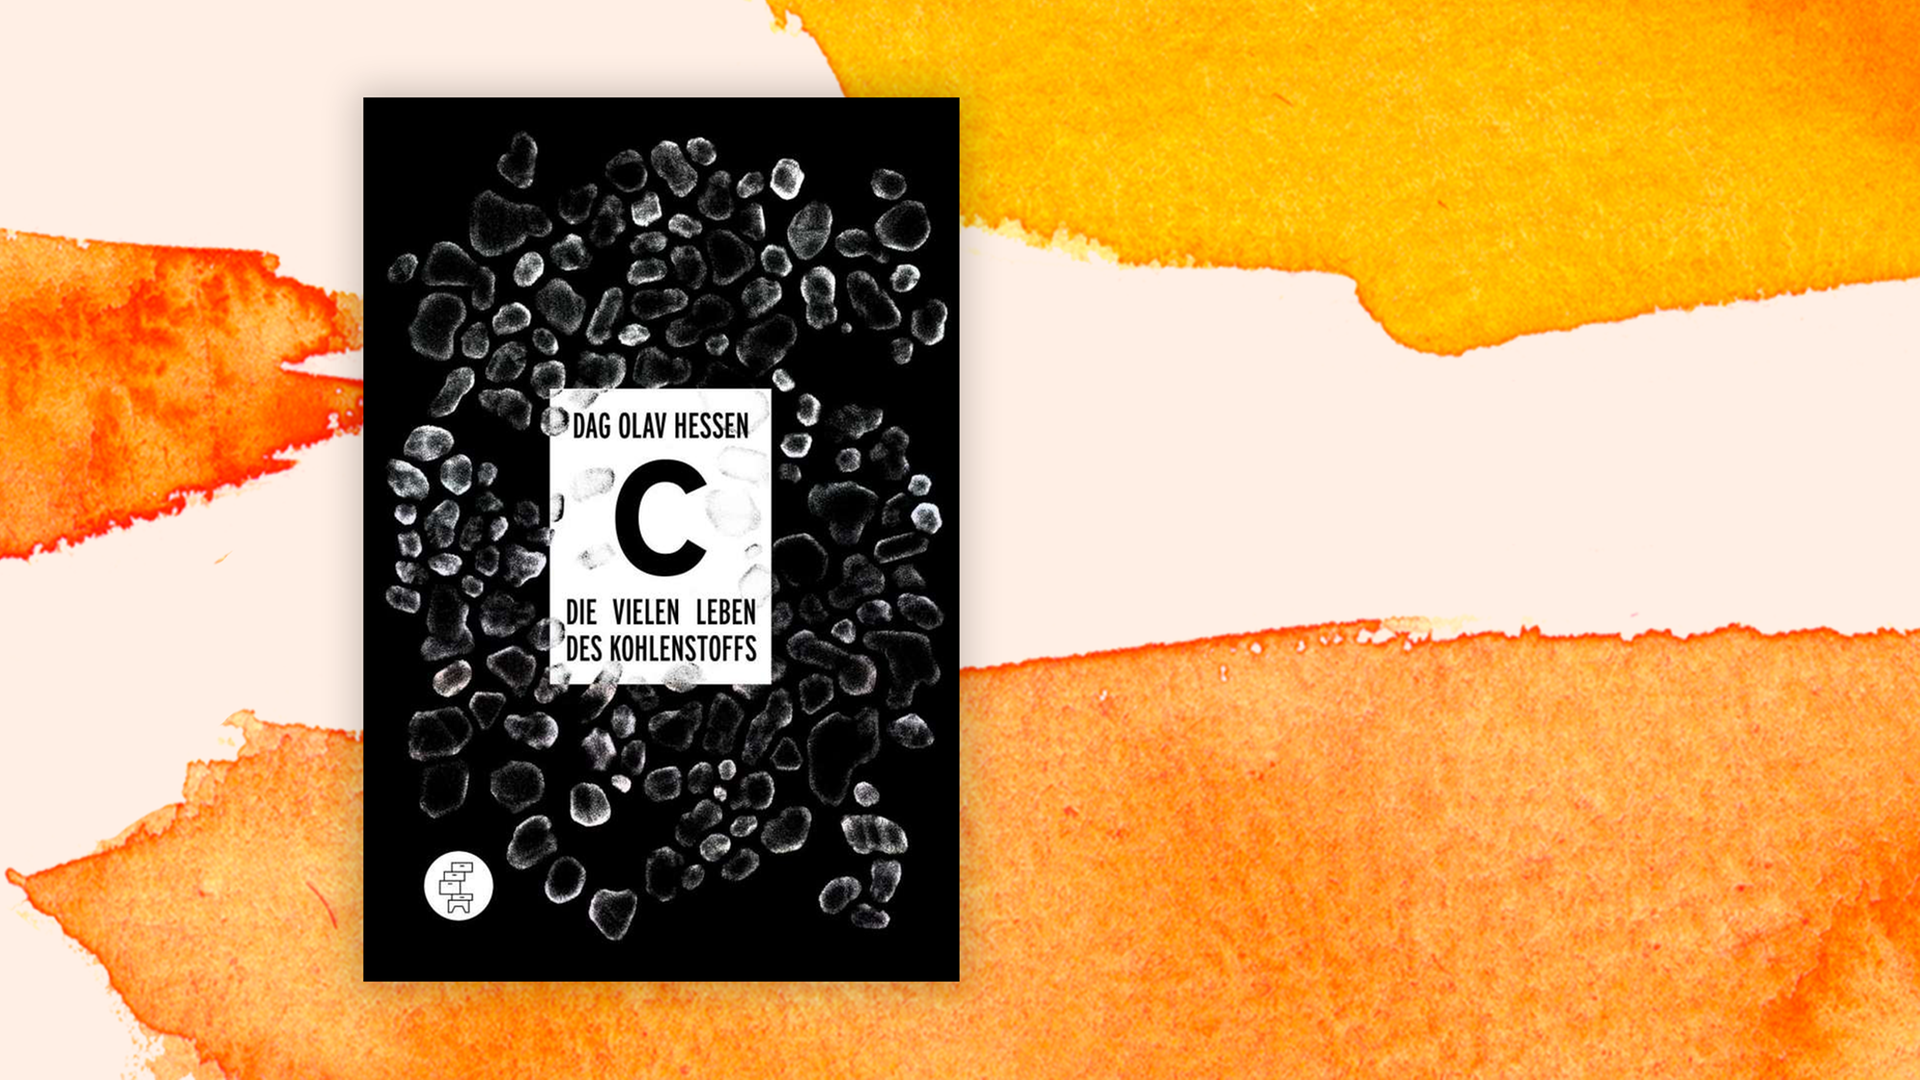 Zu sehen ist das Cover des Buches "C – Die vielen Leben des Kohlenstoffs" von Dag Olav Hessen.